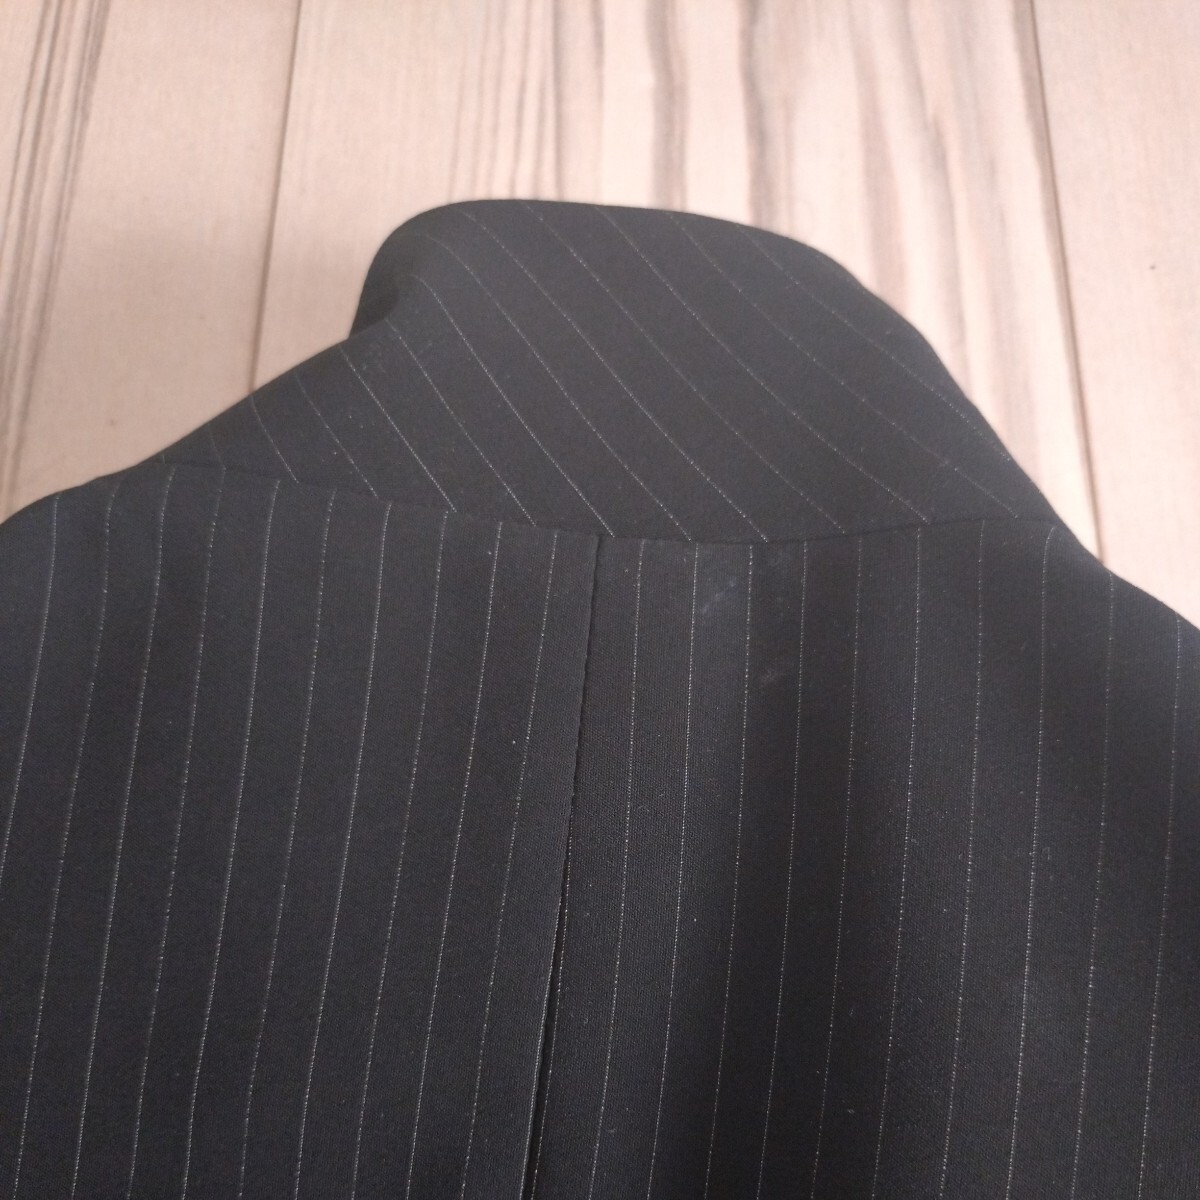  ликвидация товар VELLA Гиндза Magi -MAGGY жакет черный чёрный 38 полоса tailored jacket 